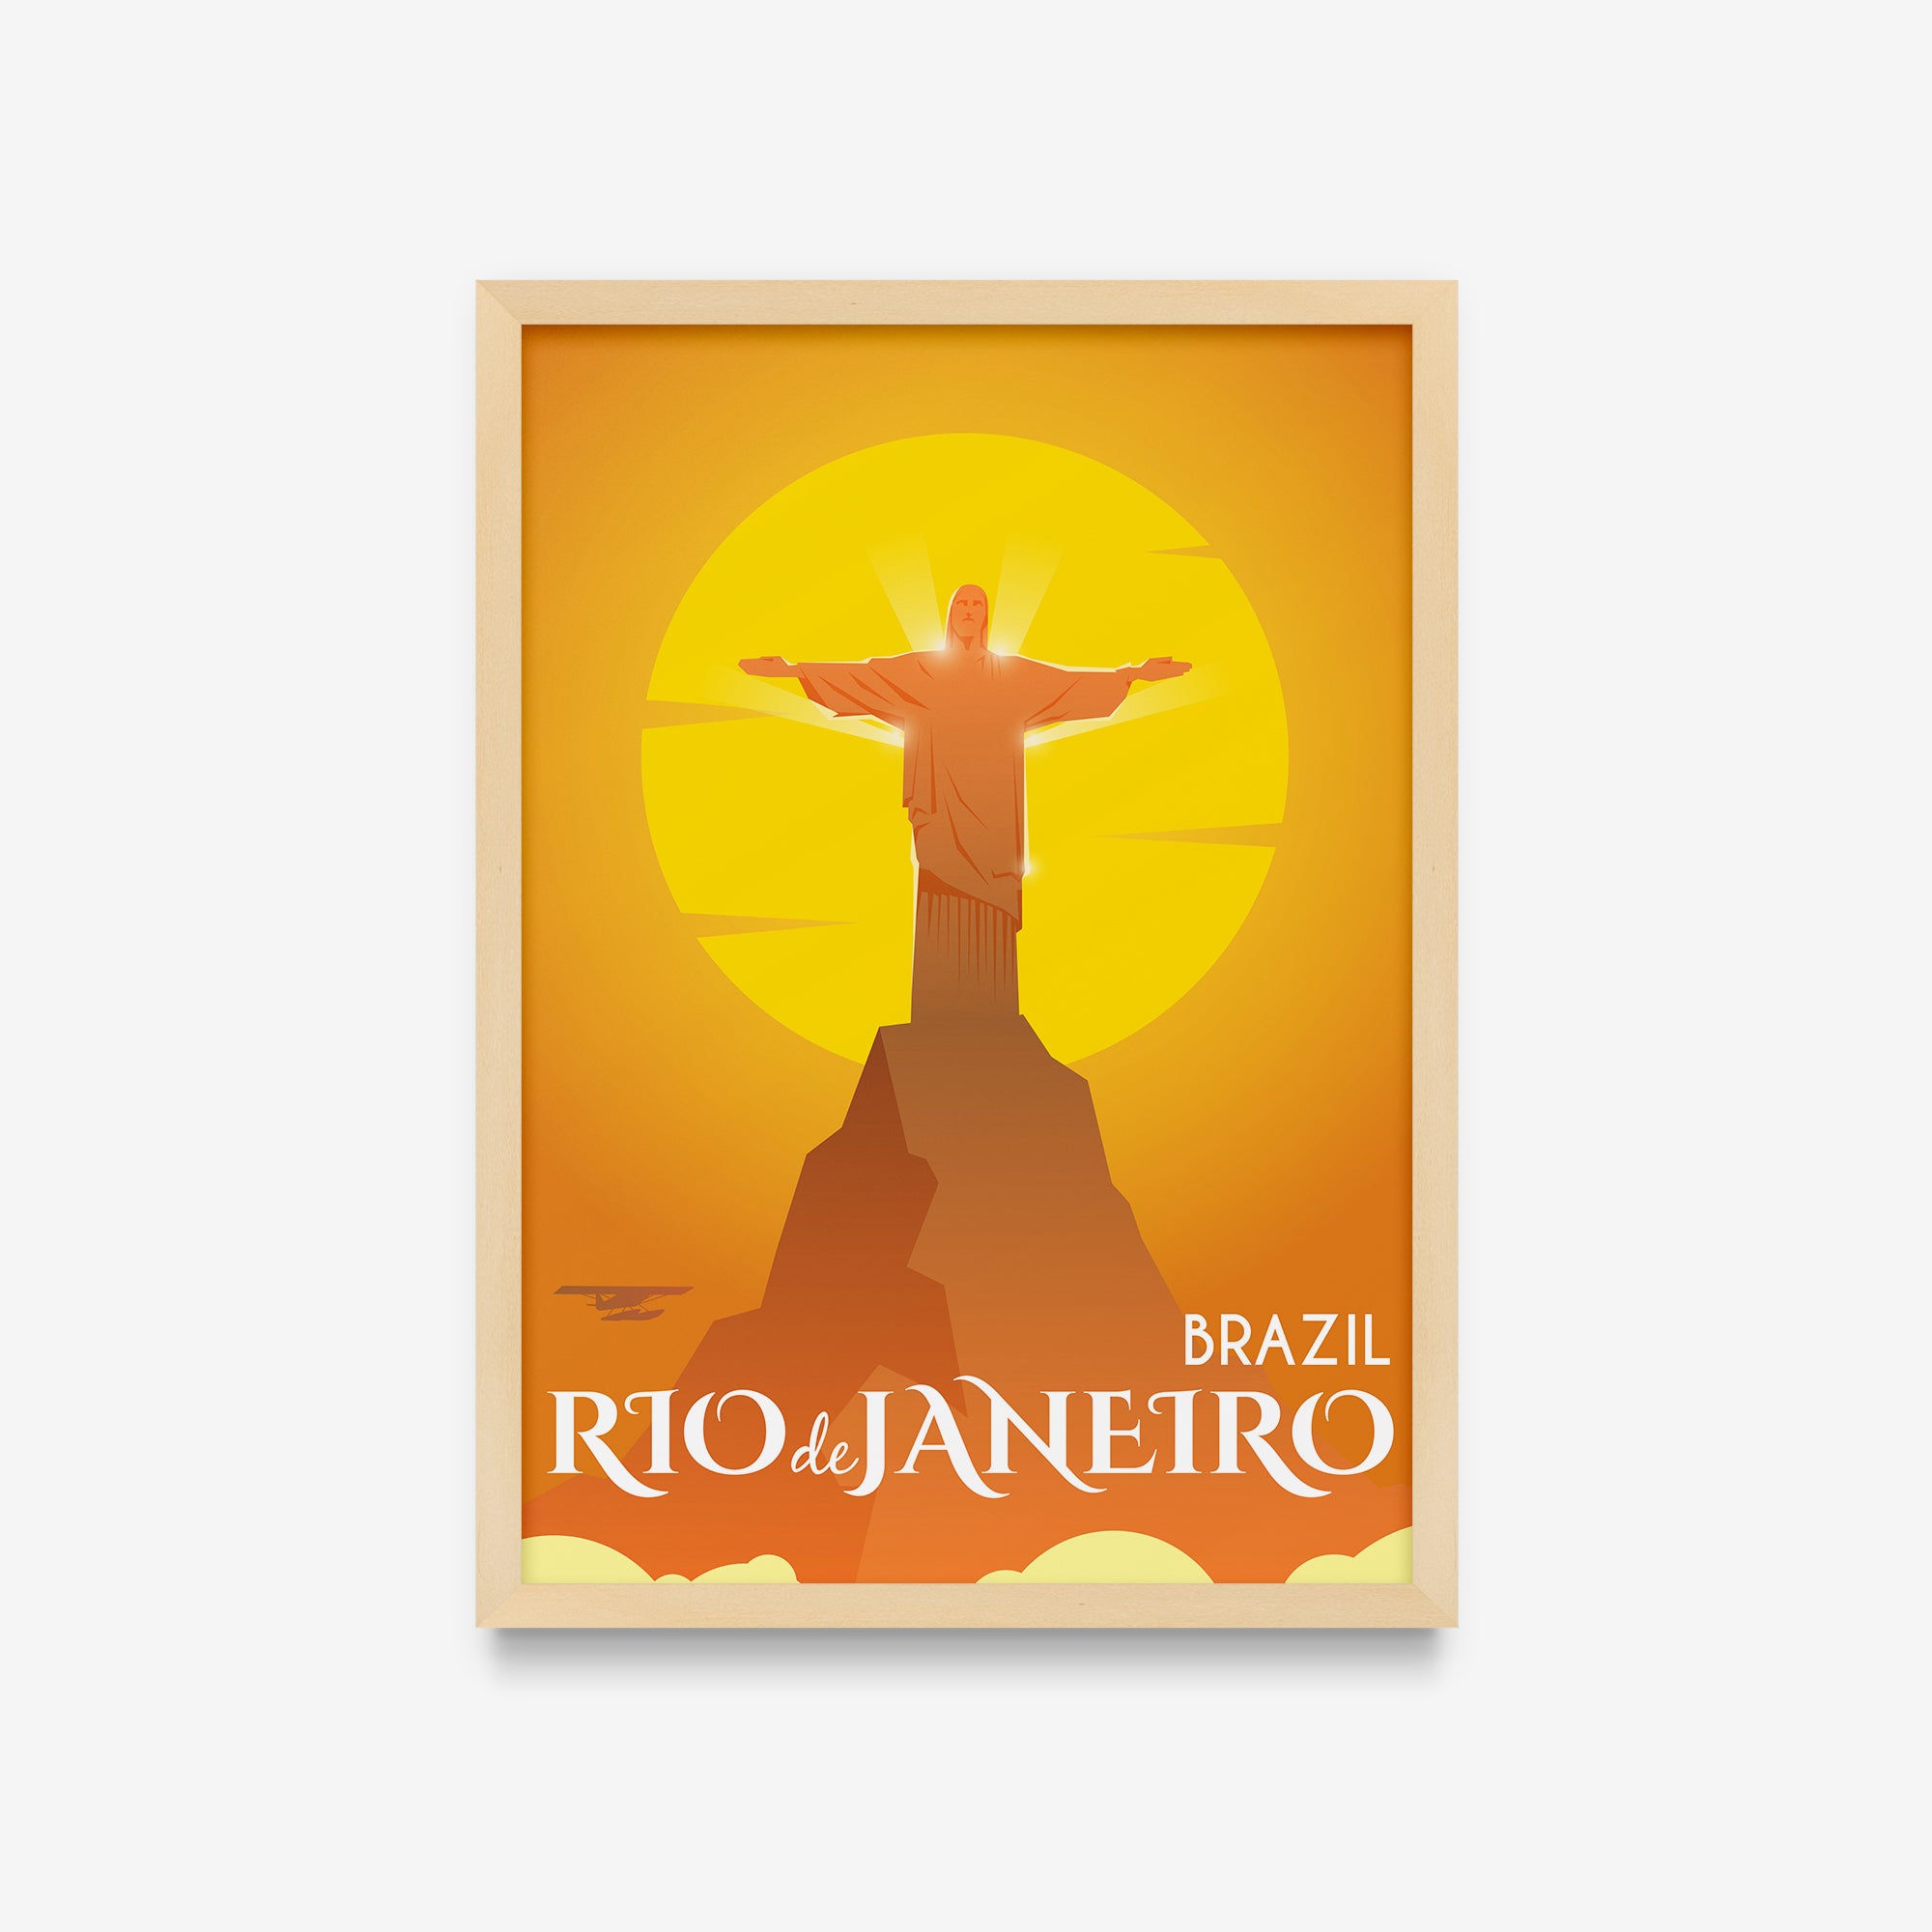 Travel Posters - Rio de Janeiro